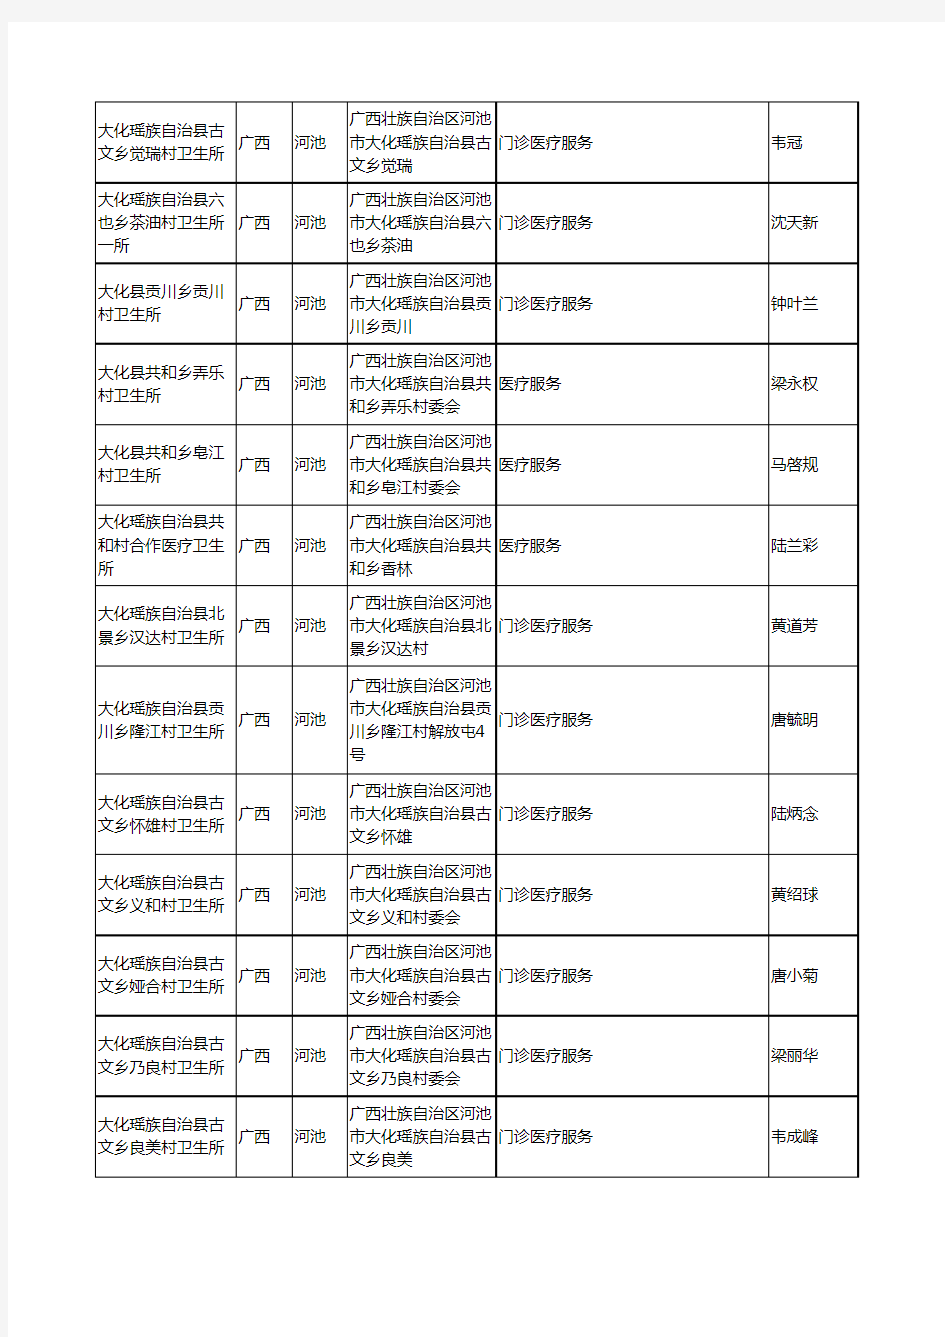 2020新版广西省医疗服务工商企业公司名录名单黄页大全1339家